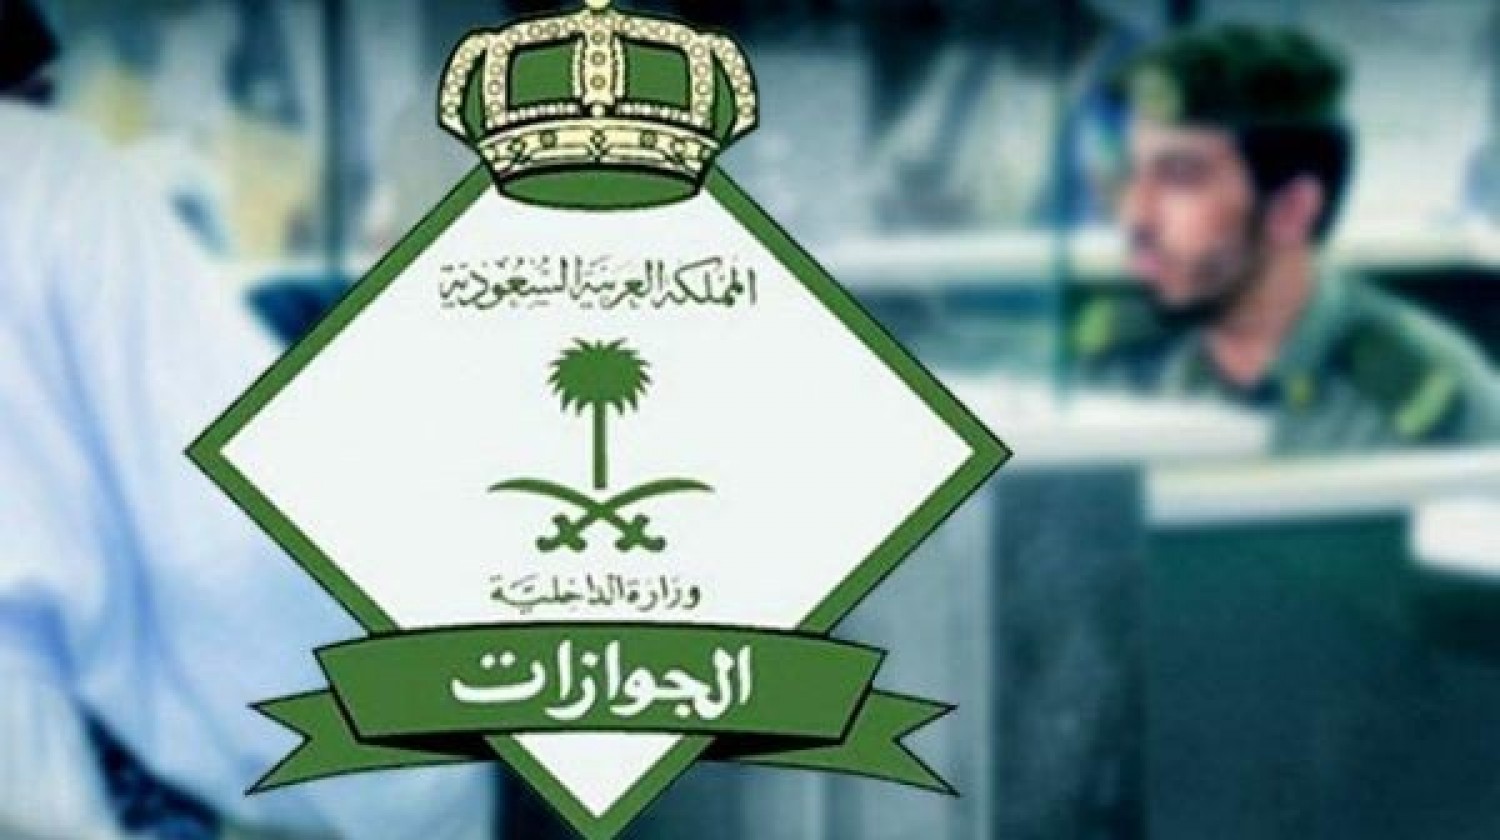 السعودية تدعو المقيمين لإلغاء تأشيرات الخروج النهائي والعودة تفادياً للغرامات